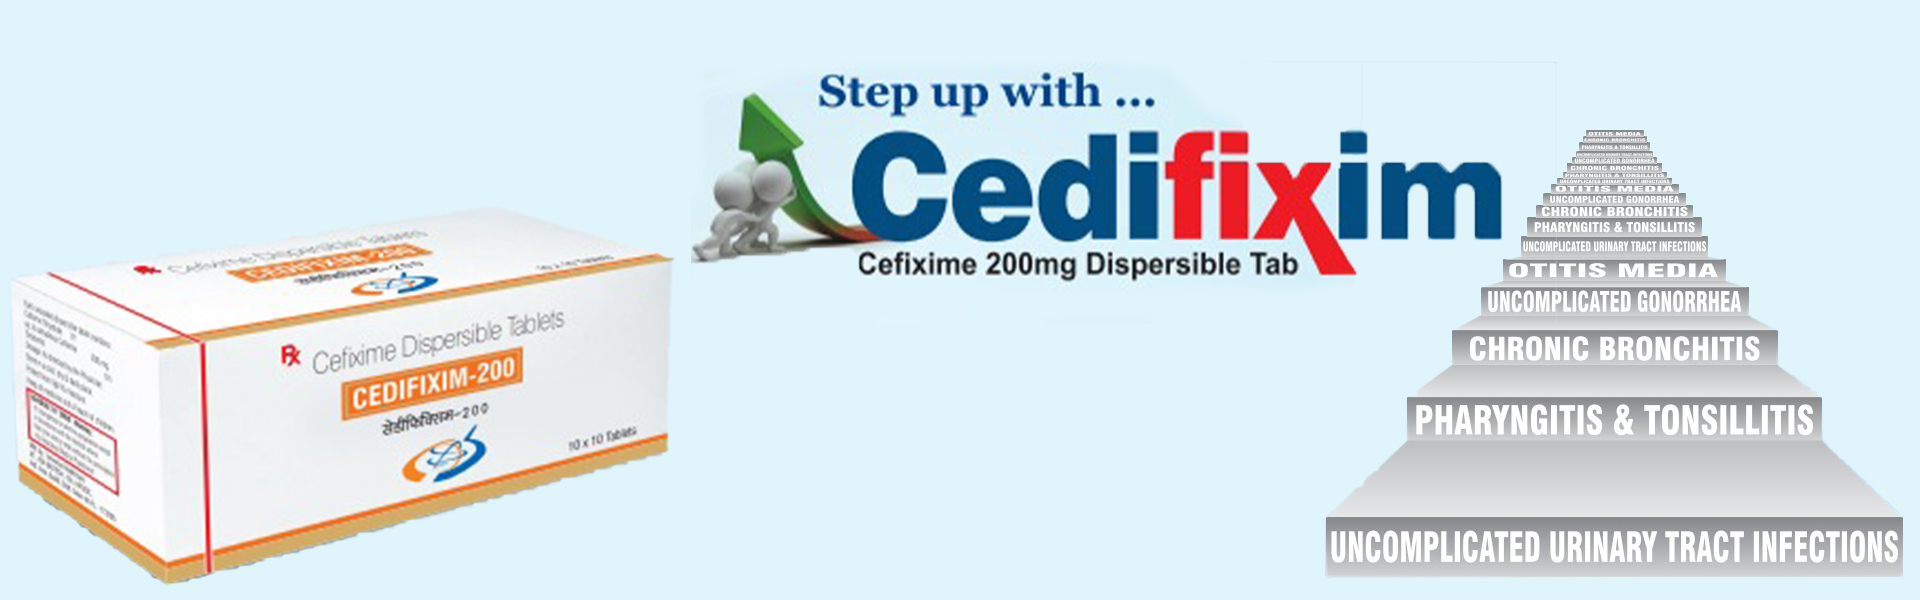 CEDIFIX (CEFIXIME 200MG TABLET)